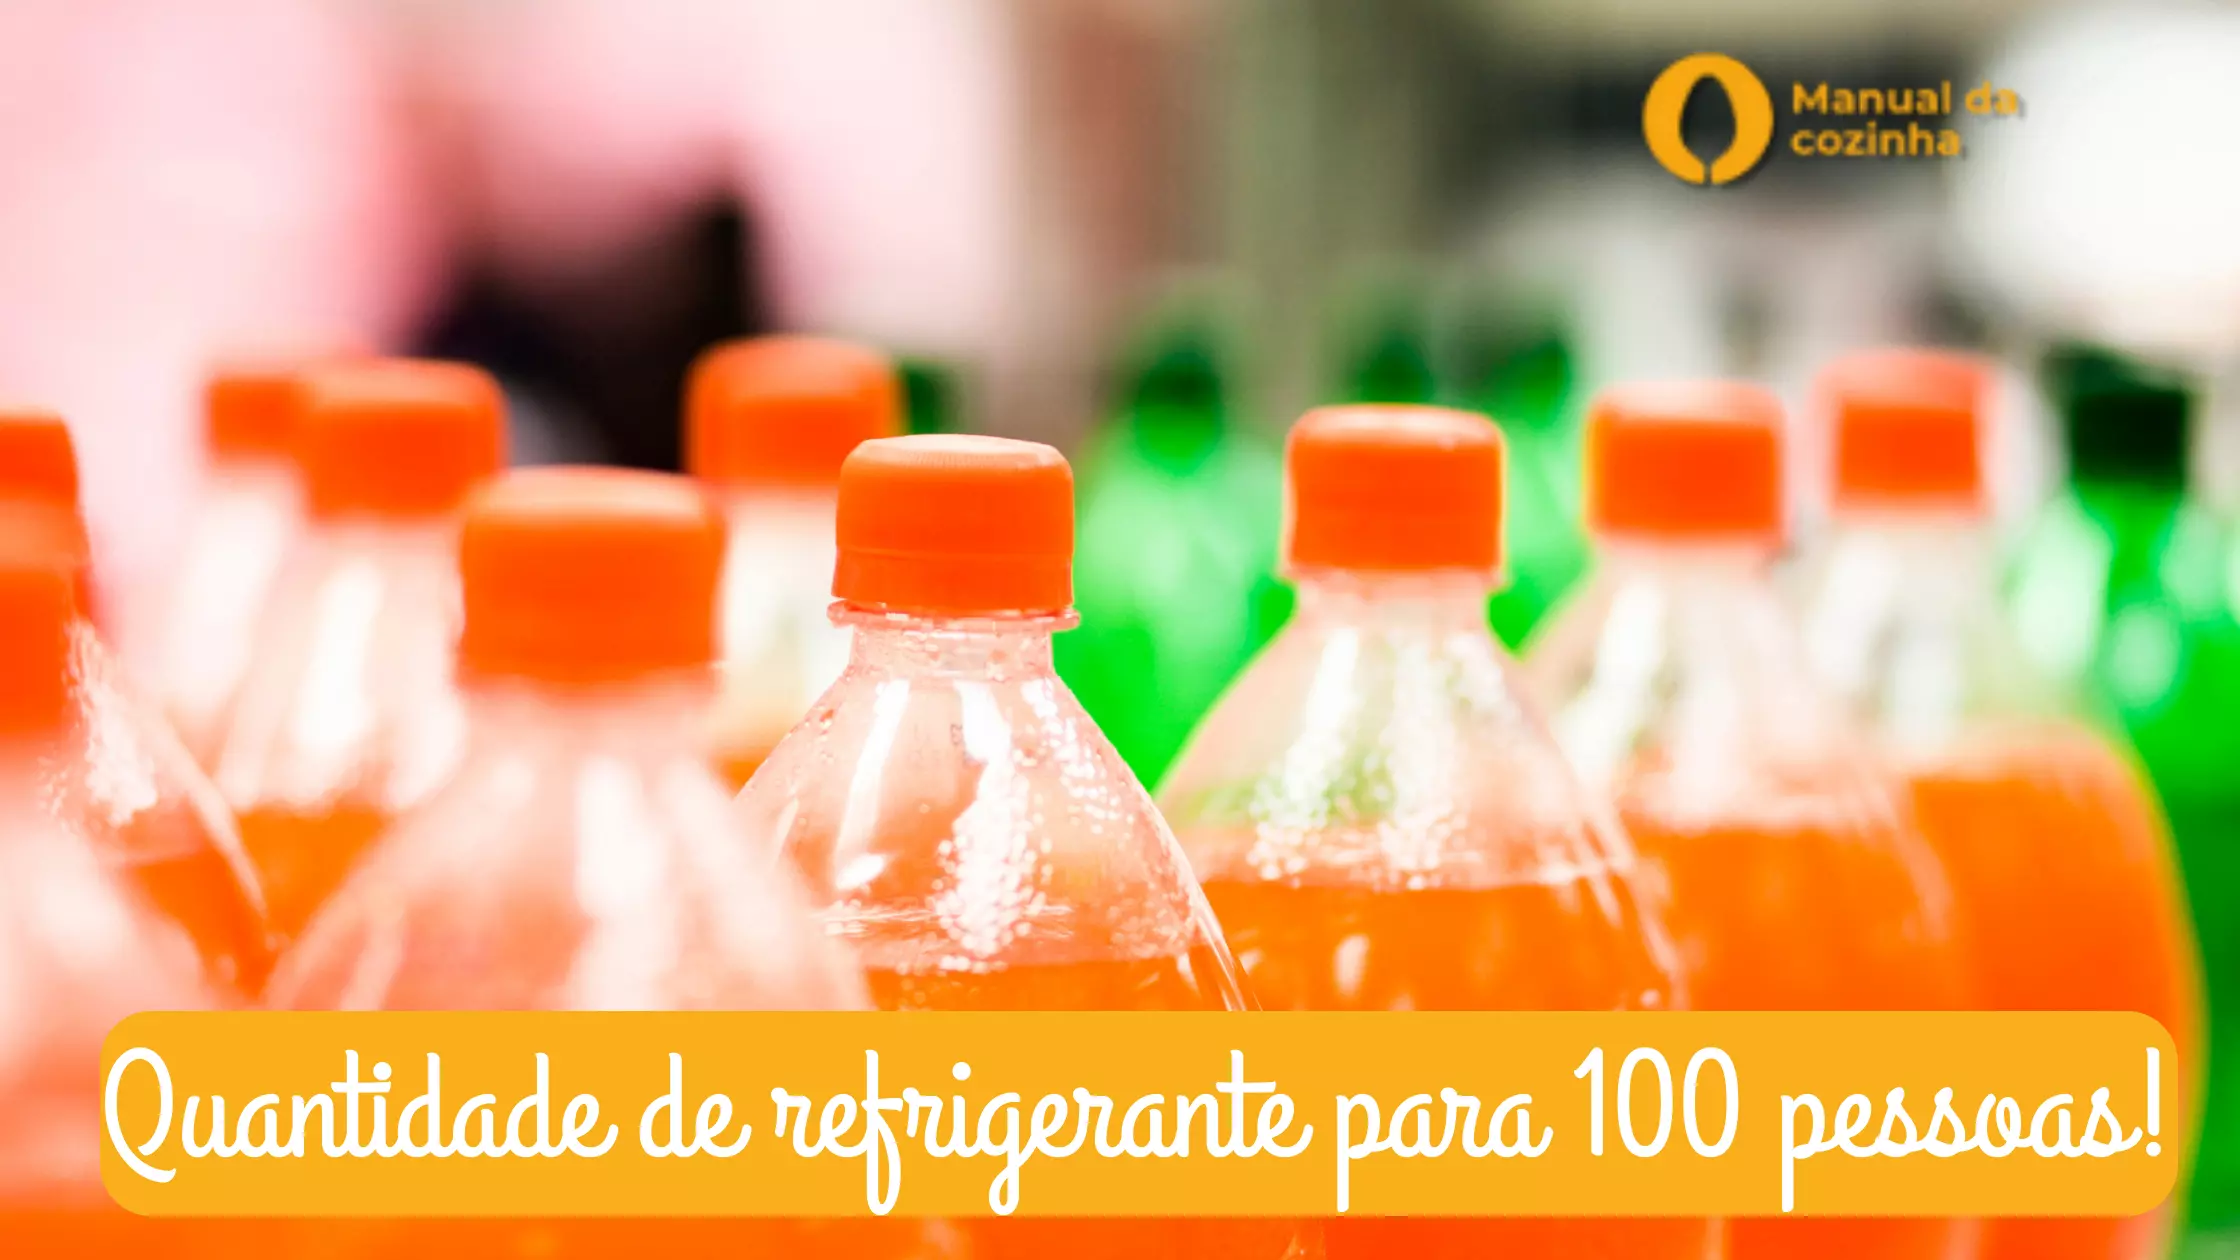 Quantidade de refrigerante para 100 pessoas